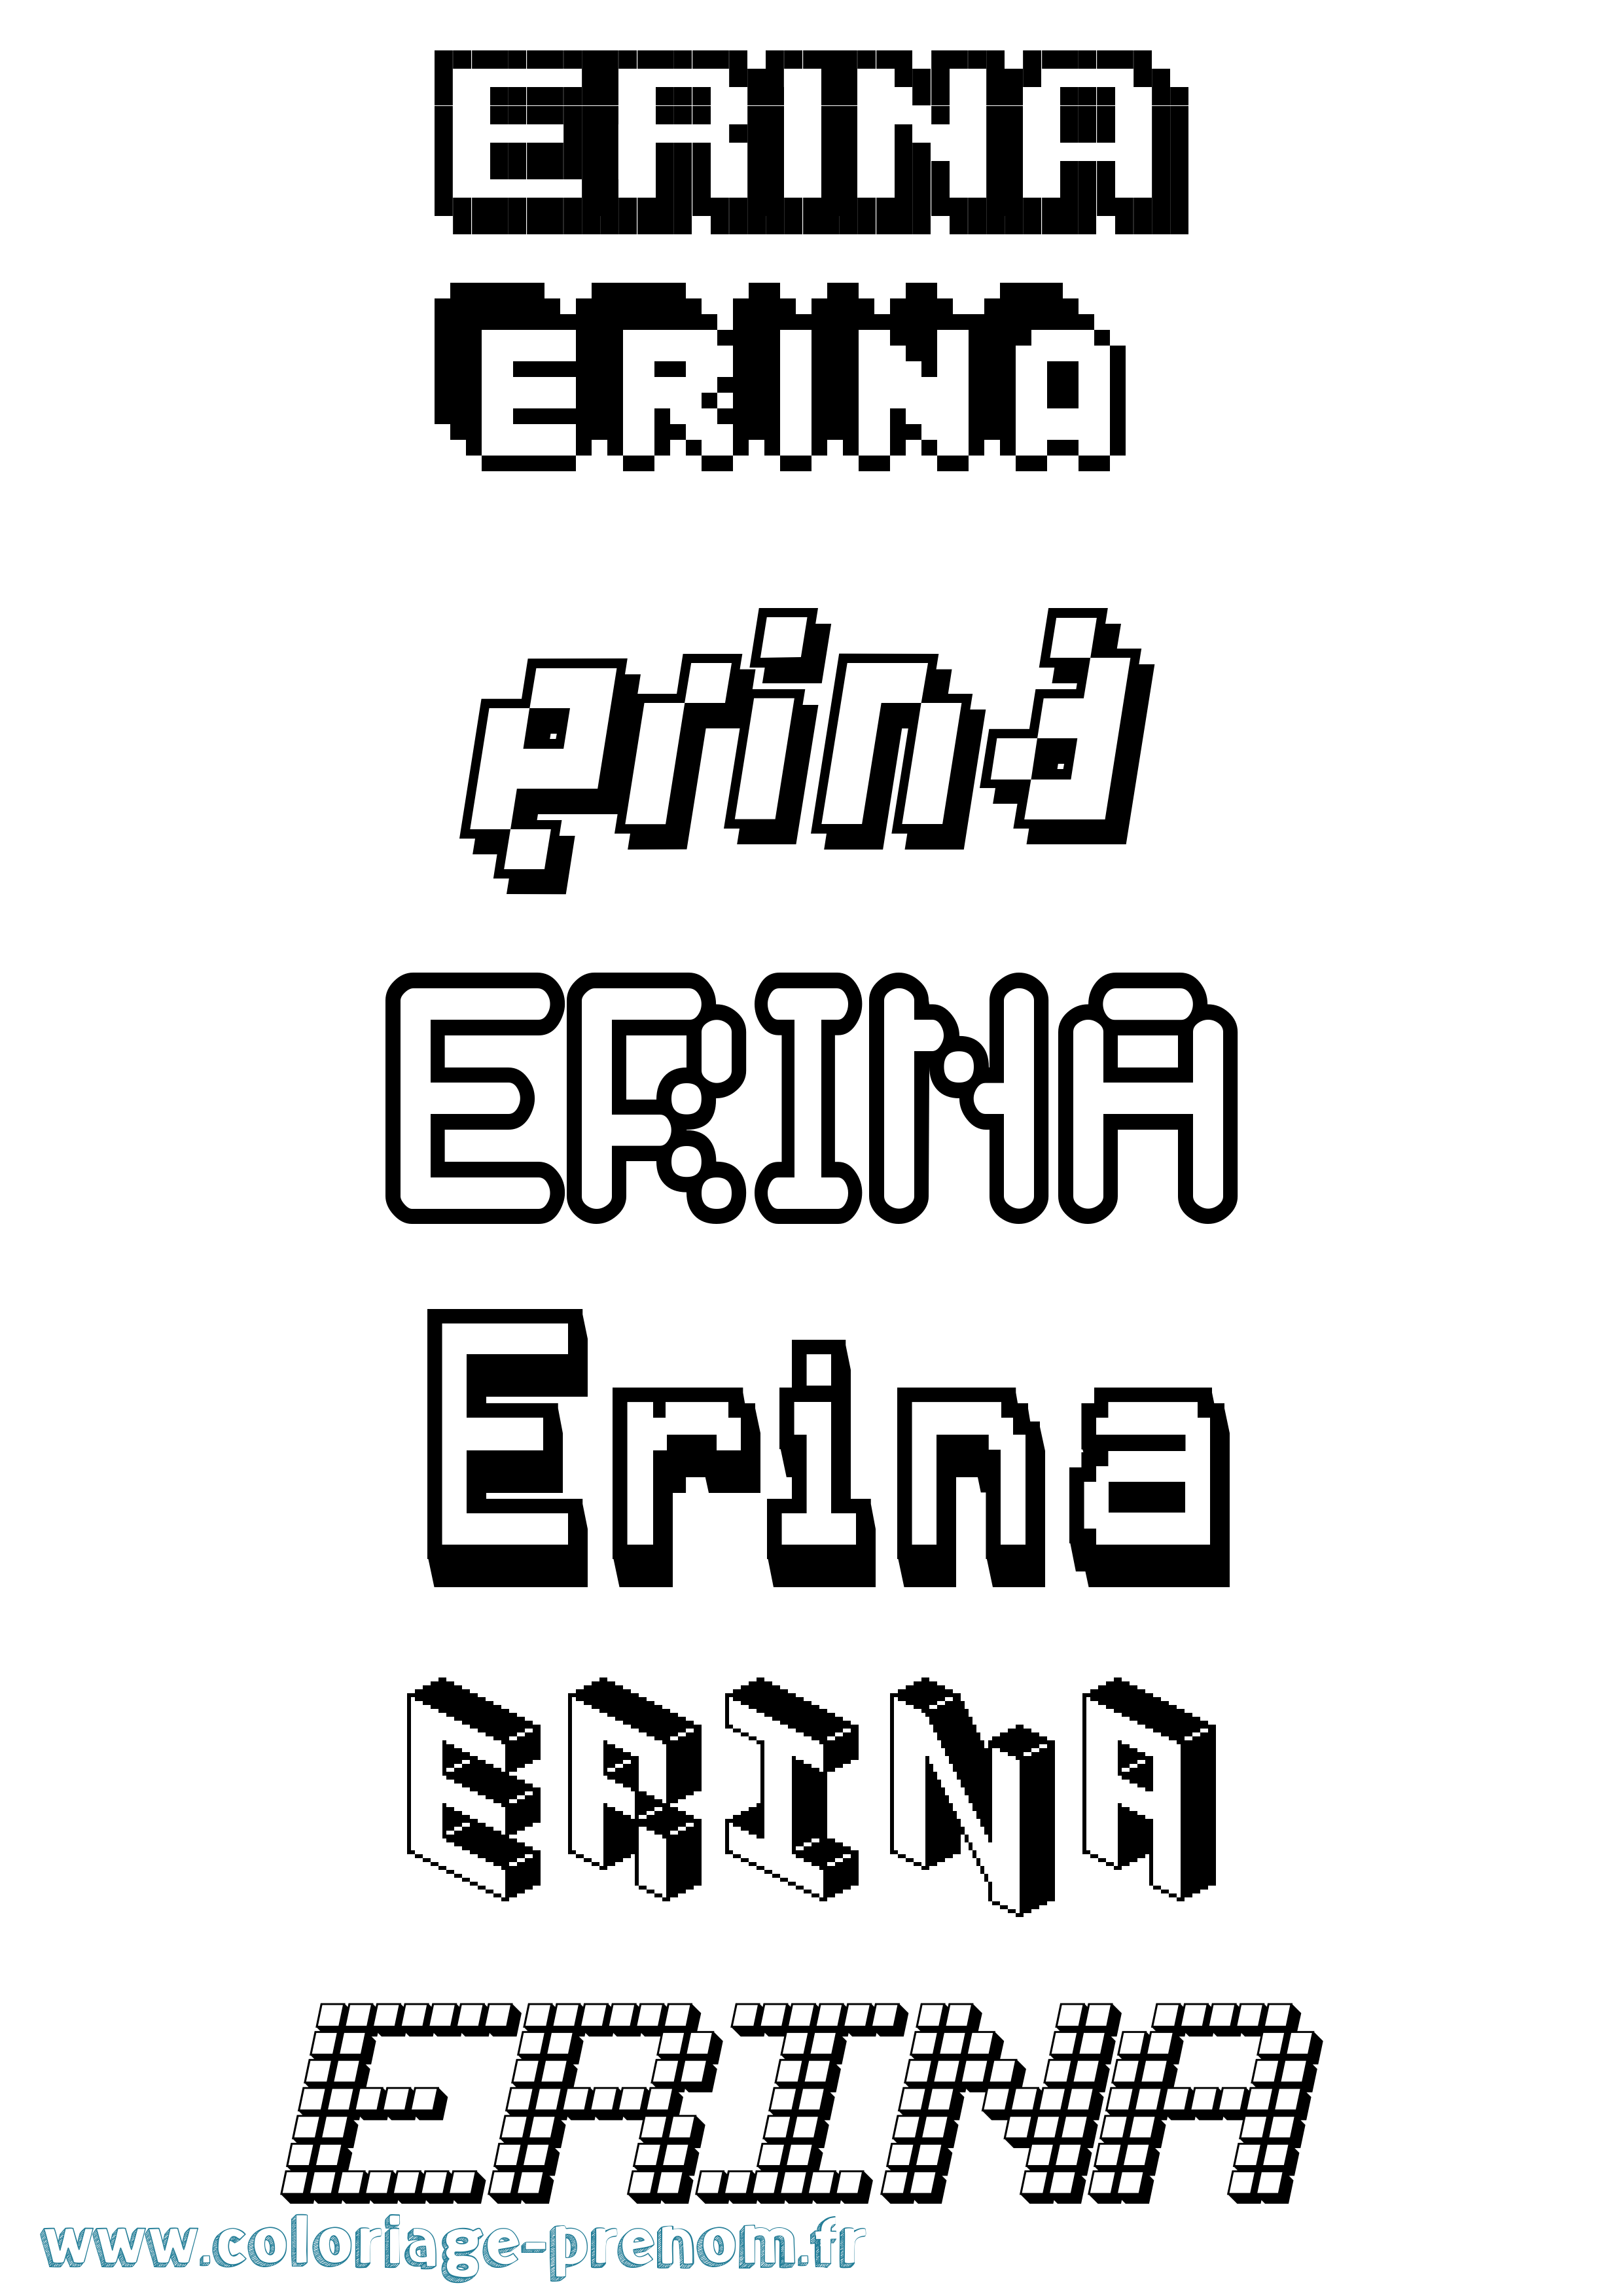 Coloriage prénom Erina Pixel